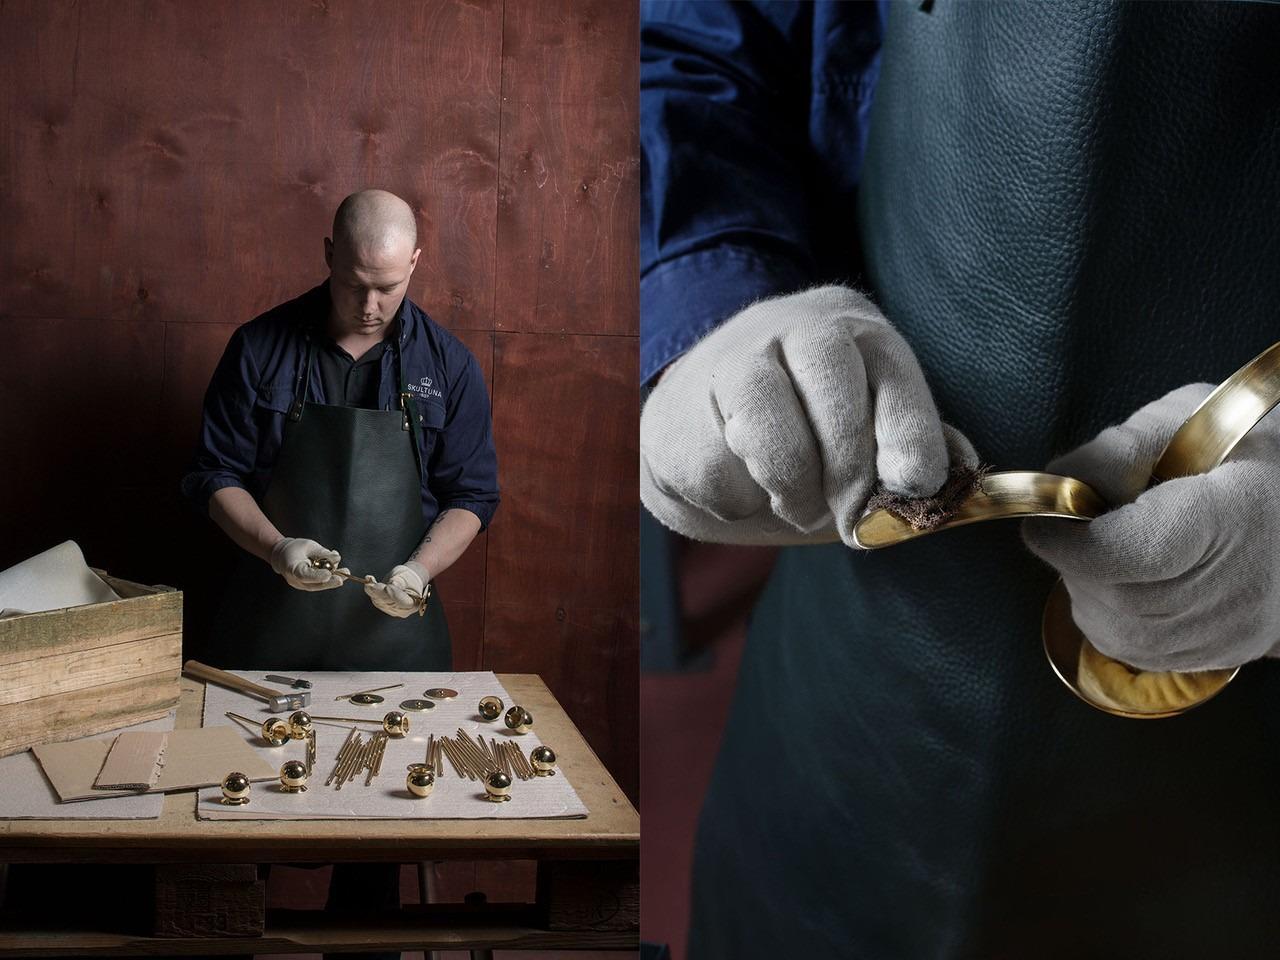 Plusieurs pièces en laiton reposent sur une table devant un homme qui est en train d'assembler les pièces. La photo montre un gros plan de ses mains en train de polir un chandelier en laiton.